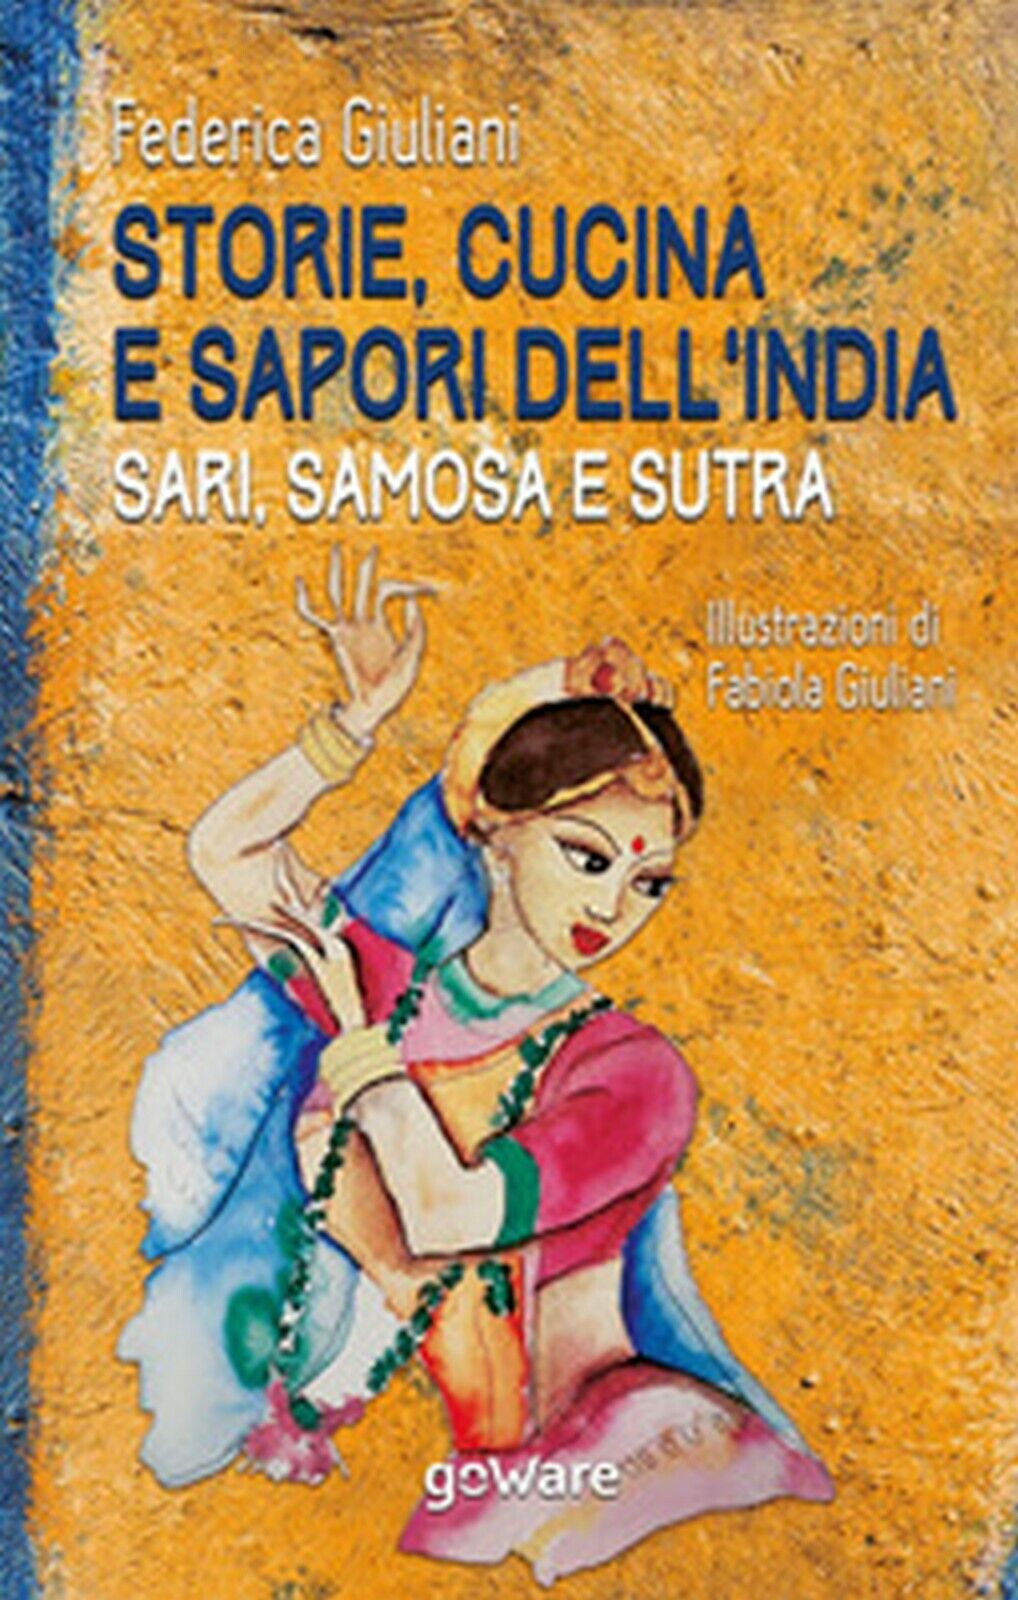 Storie, cucina e sapori delL'India. Sari, samosa e sutra, di Federica Giuliani libro usato